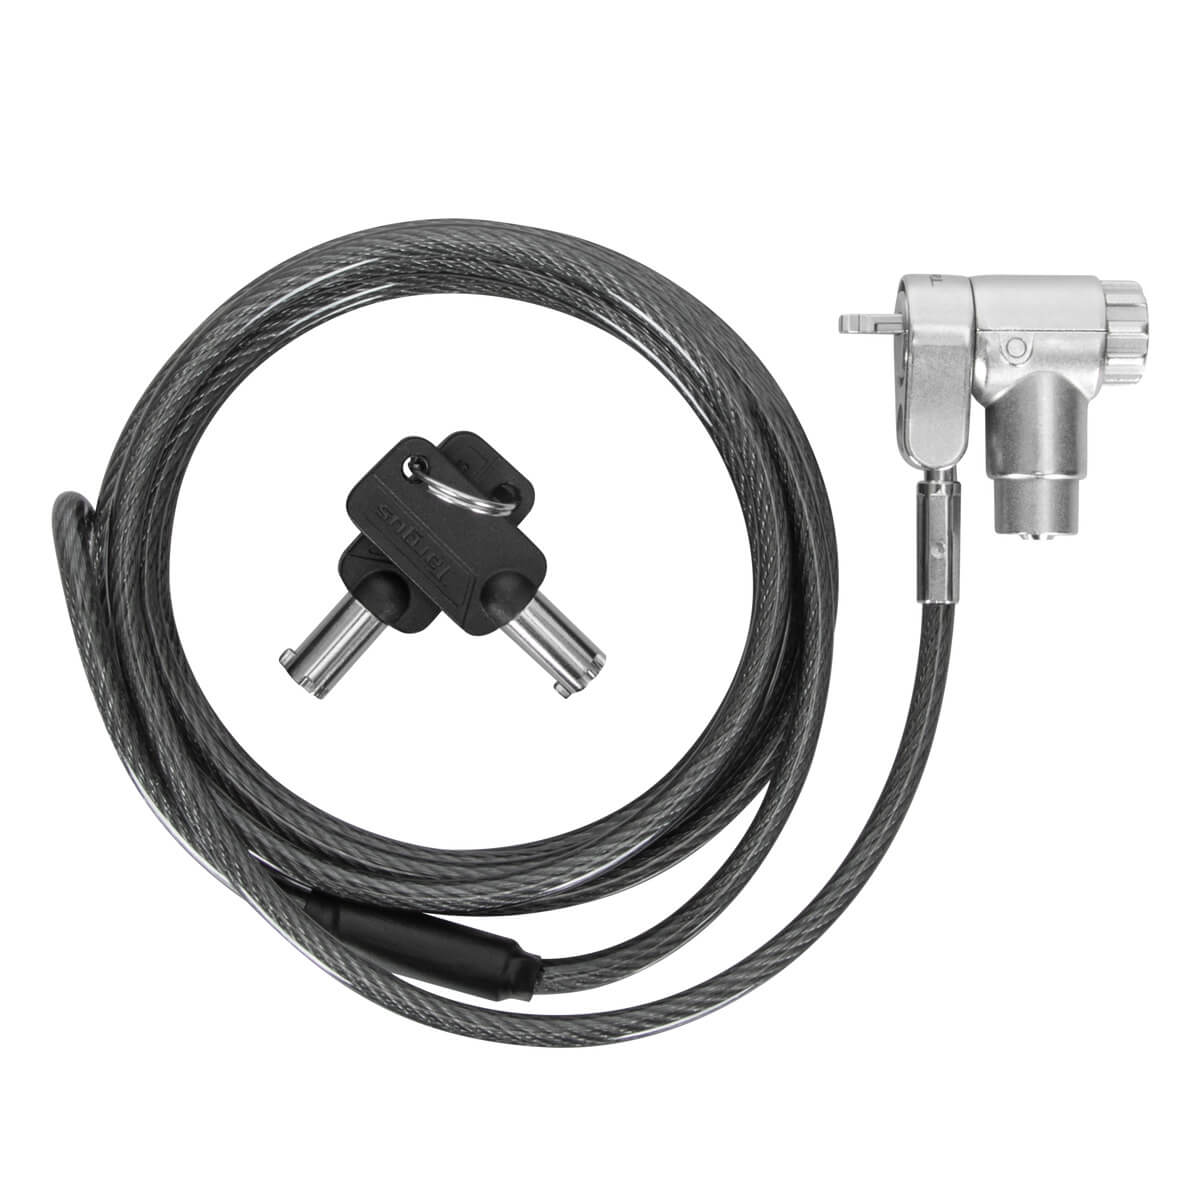 Targus DEFCON™ Ultimate Universal Keyed Cable Lock With Slimline Adaptable Lock Head